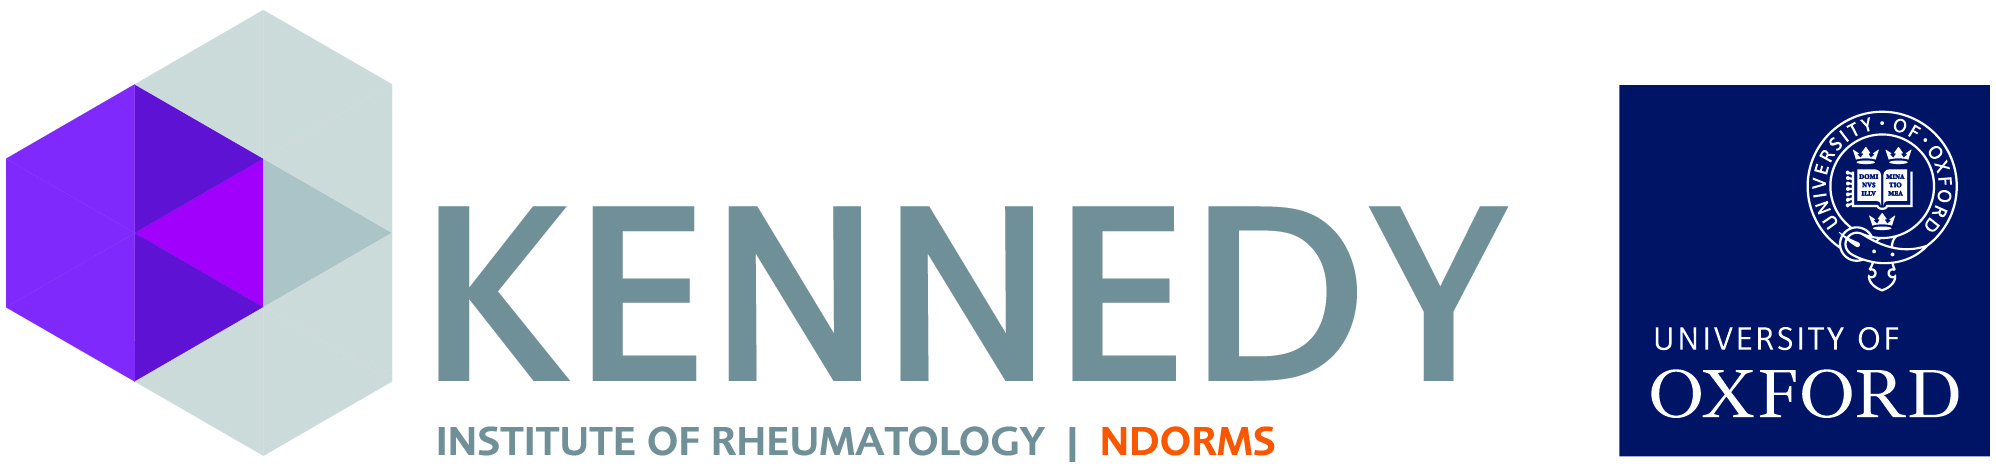 Kennedy Institute of Rheumatology logo